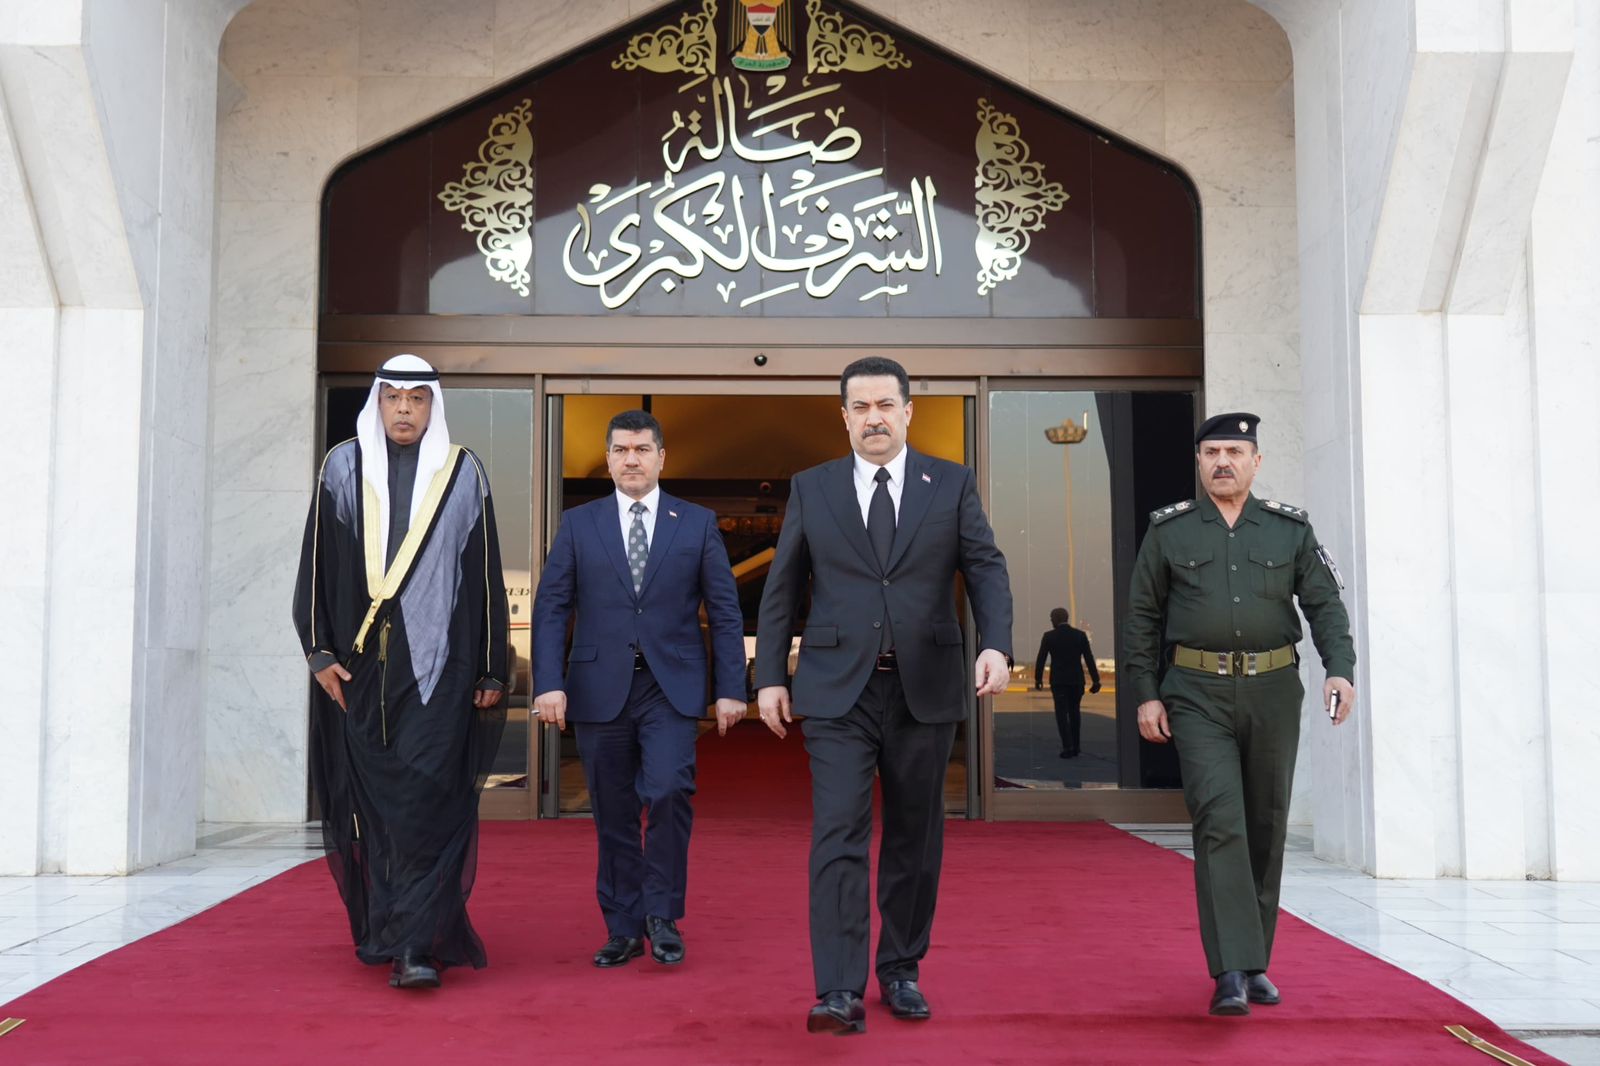 السوداني يتوجه إلى الكويت على رأس وفد حكومي وبرلماني